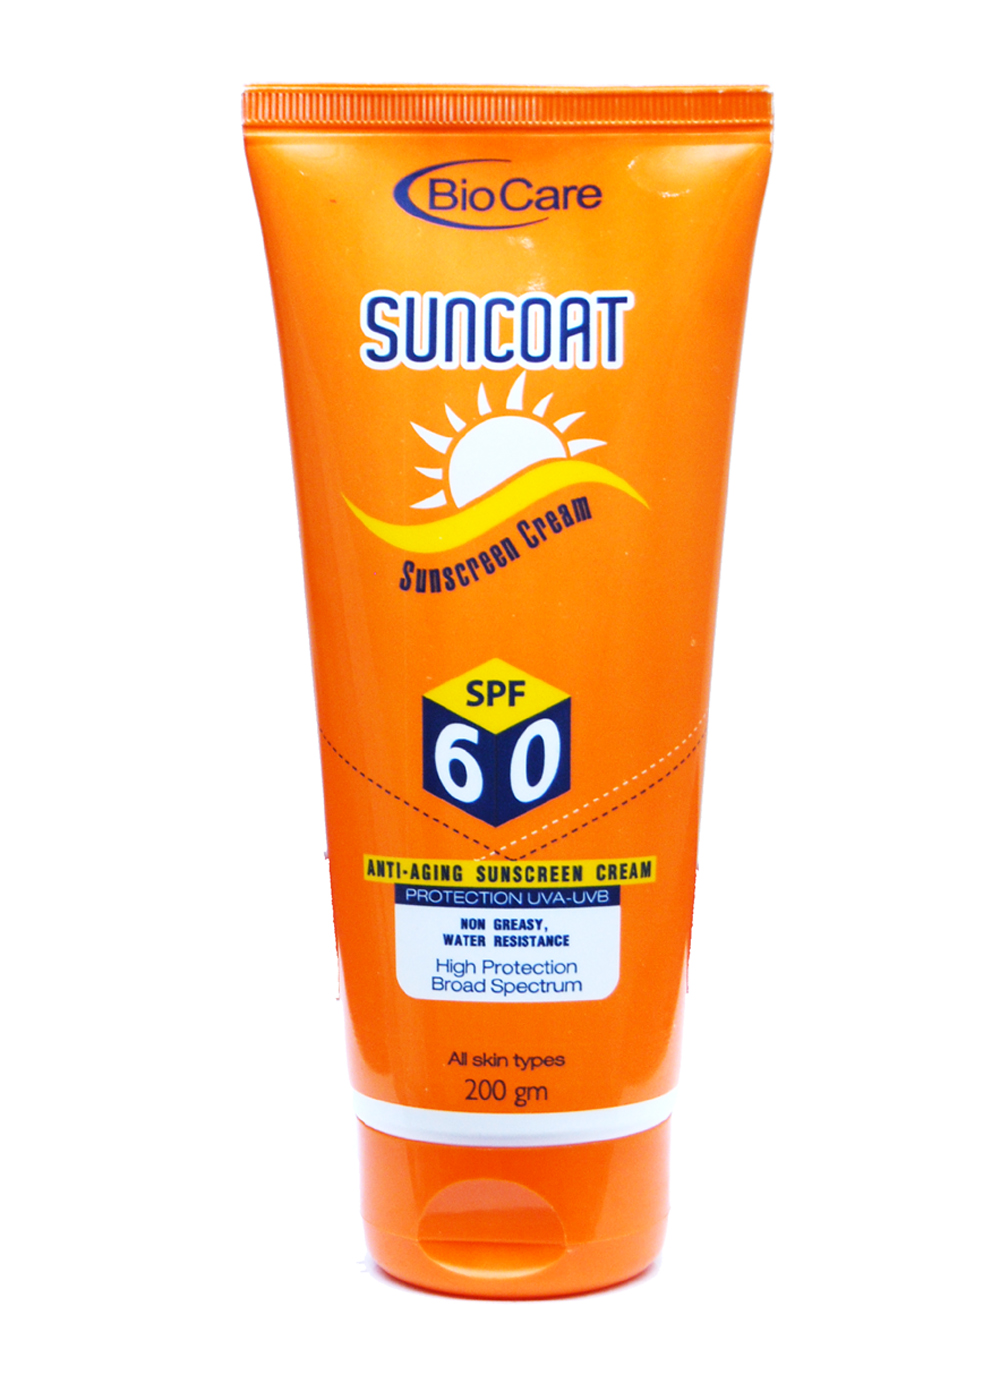 BioCare Sunscreen Cream SPF 60